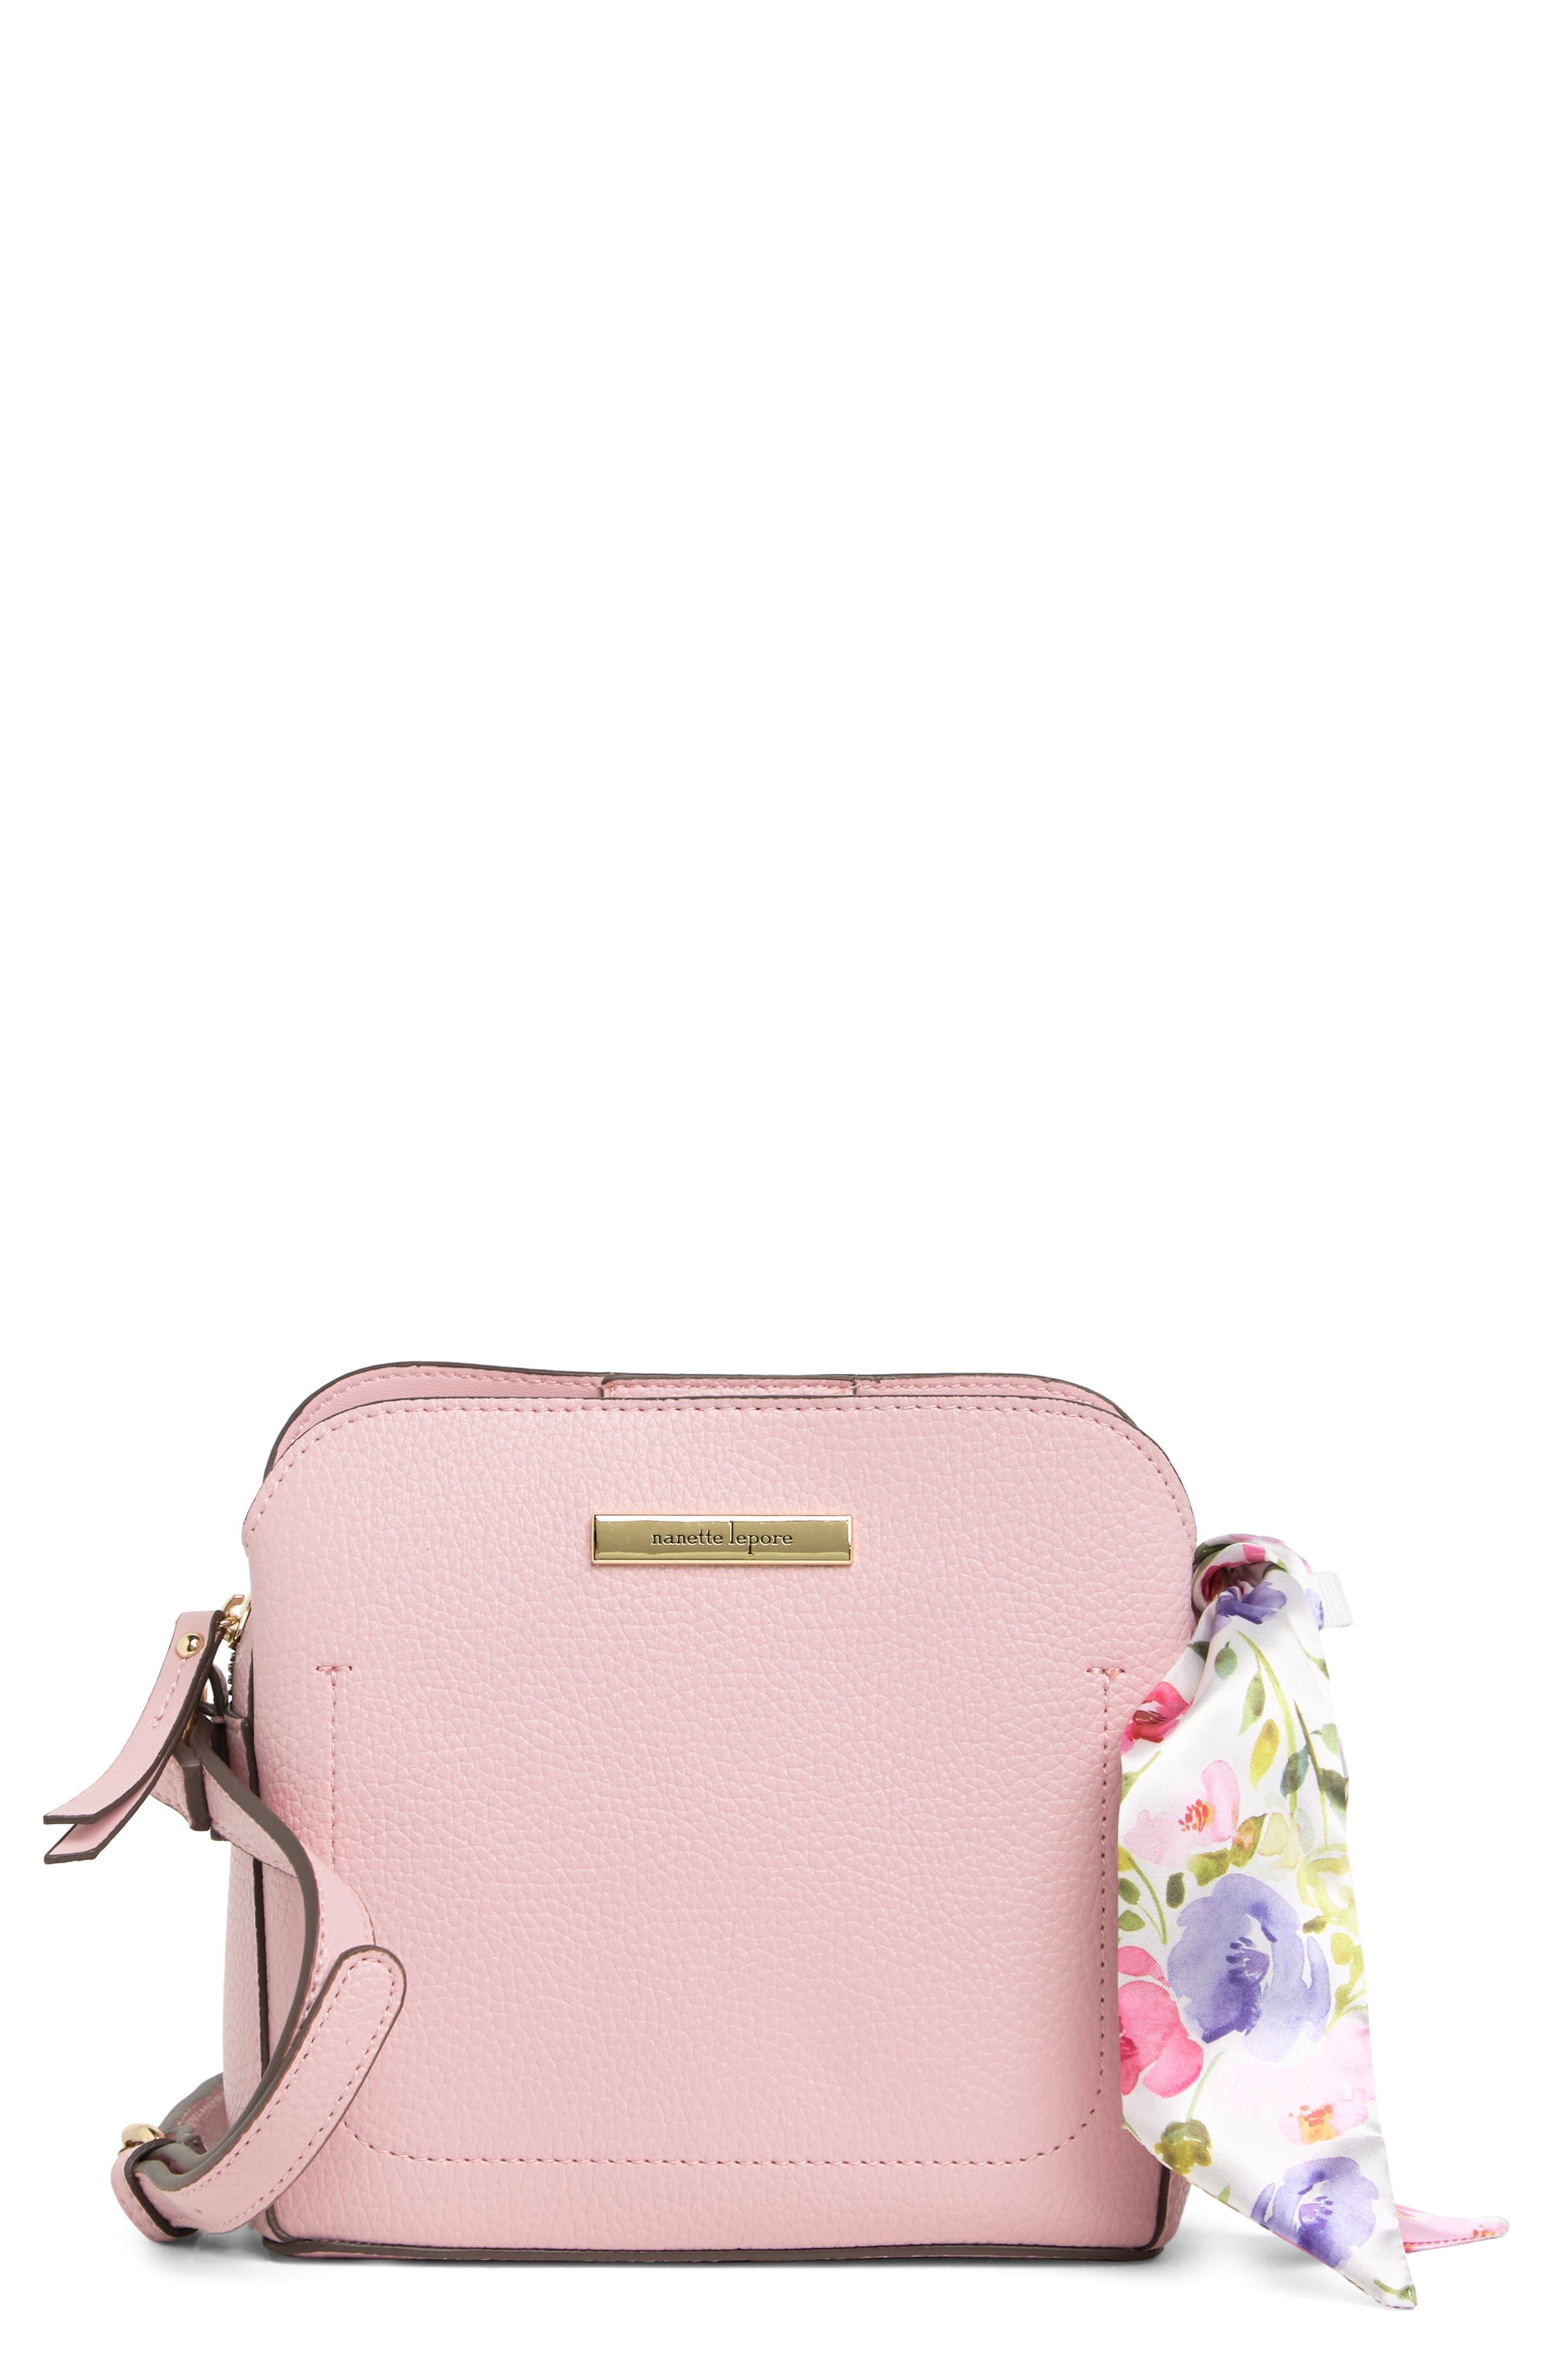 Nanette Lepore Abigail Crossbody Bag in Pink | Lyst